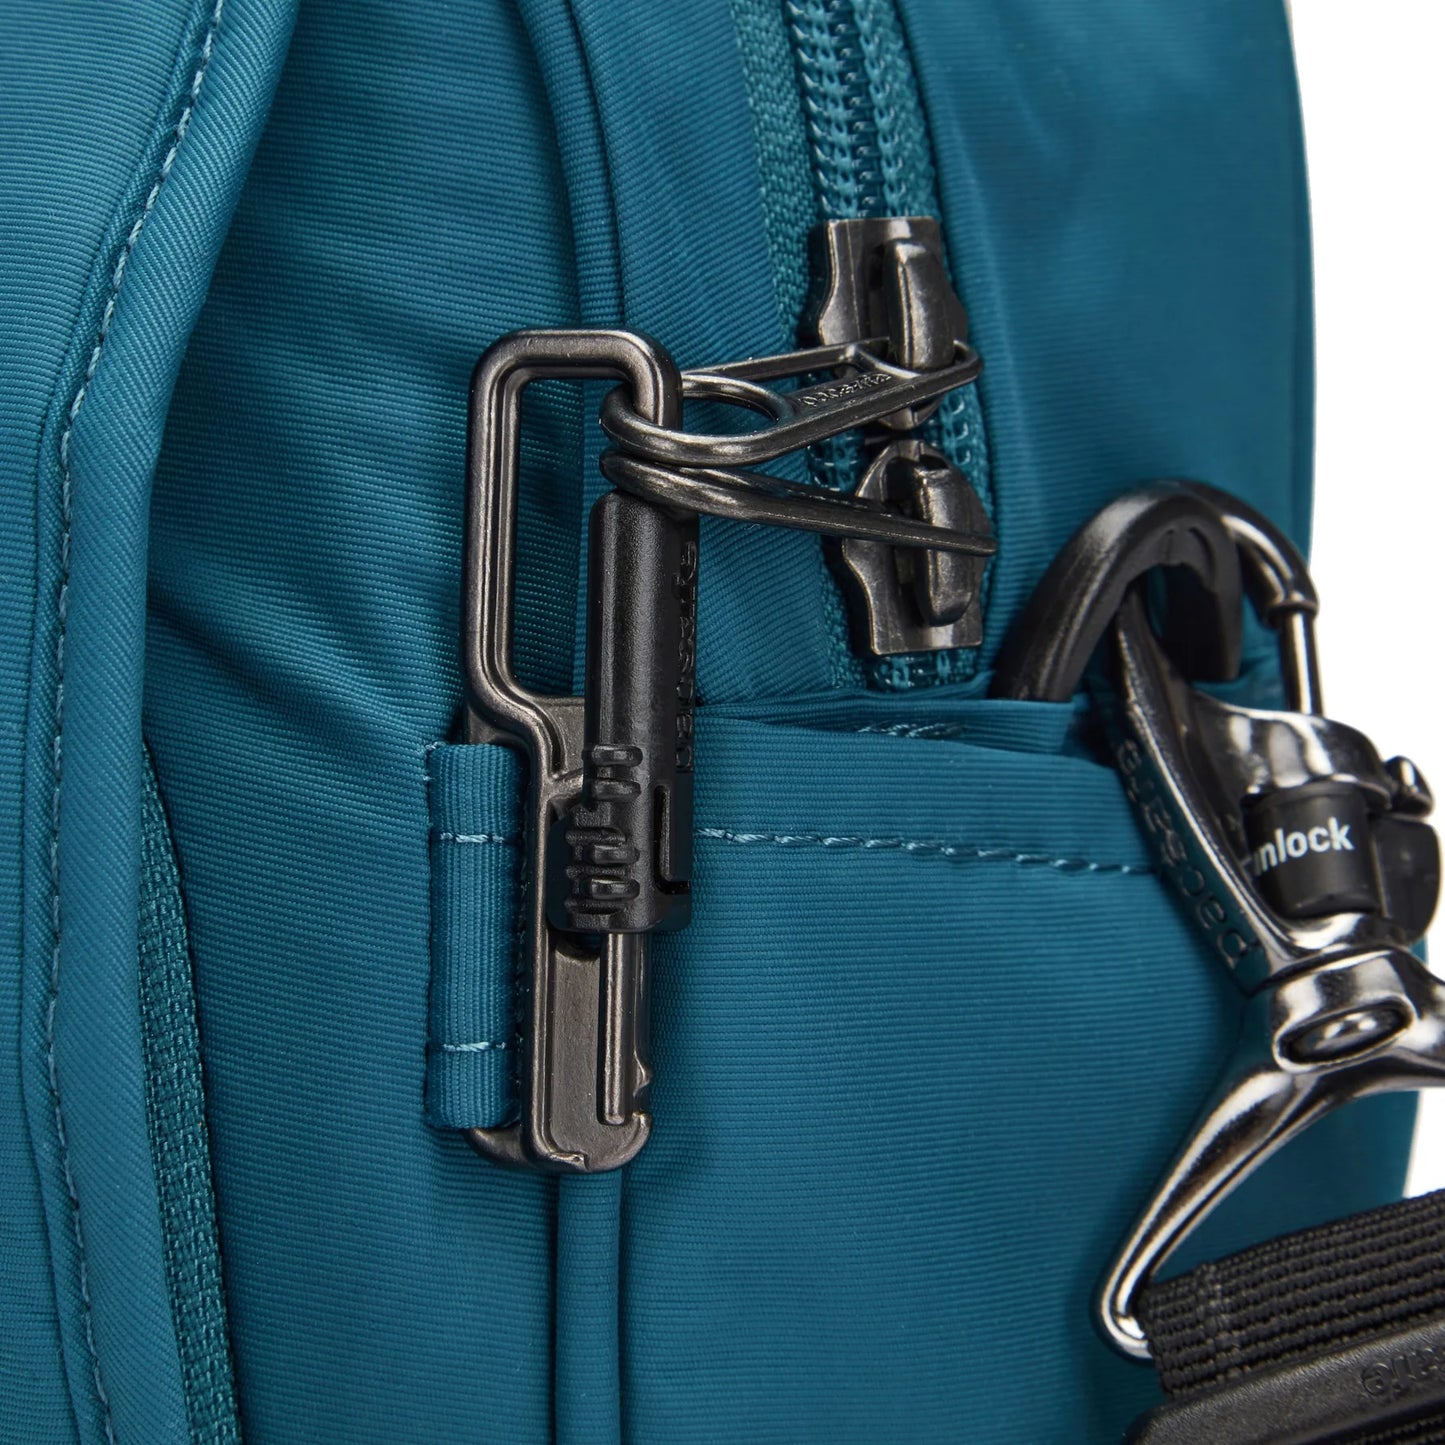 Pacsafe - Metrosafe LS200 Anti-Theft Crossbody Bag